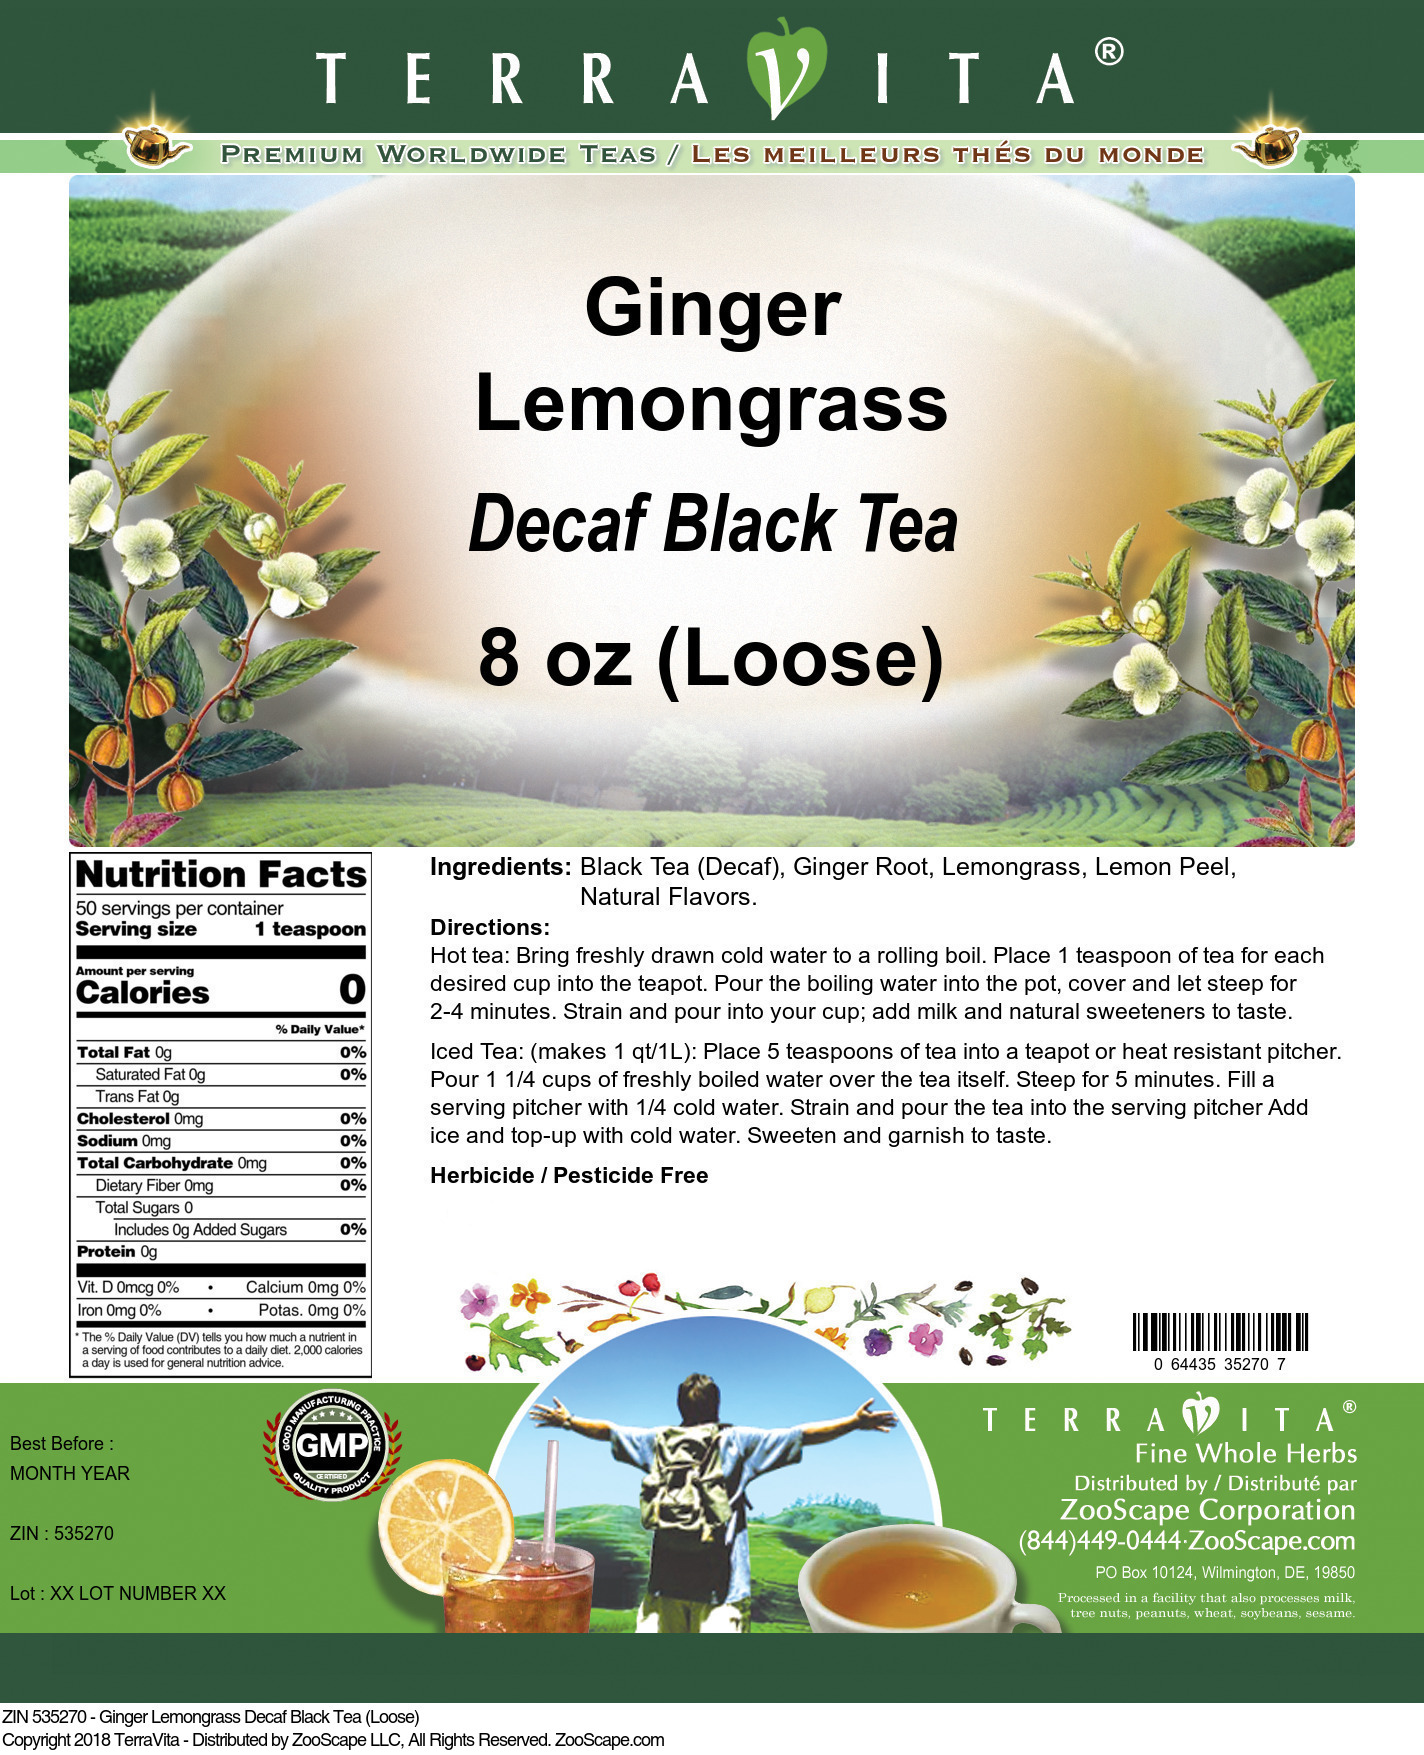 Ginger Lemongrass Decaf Black Tea (Loose) - Label